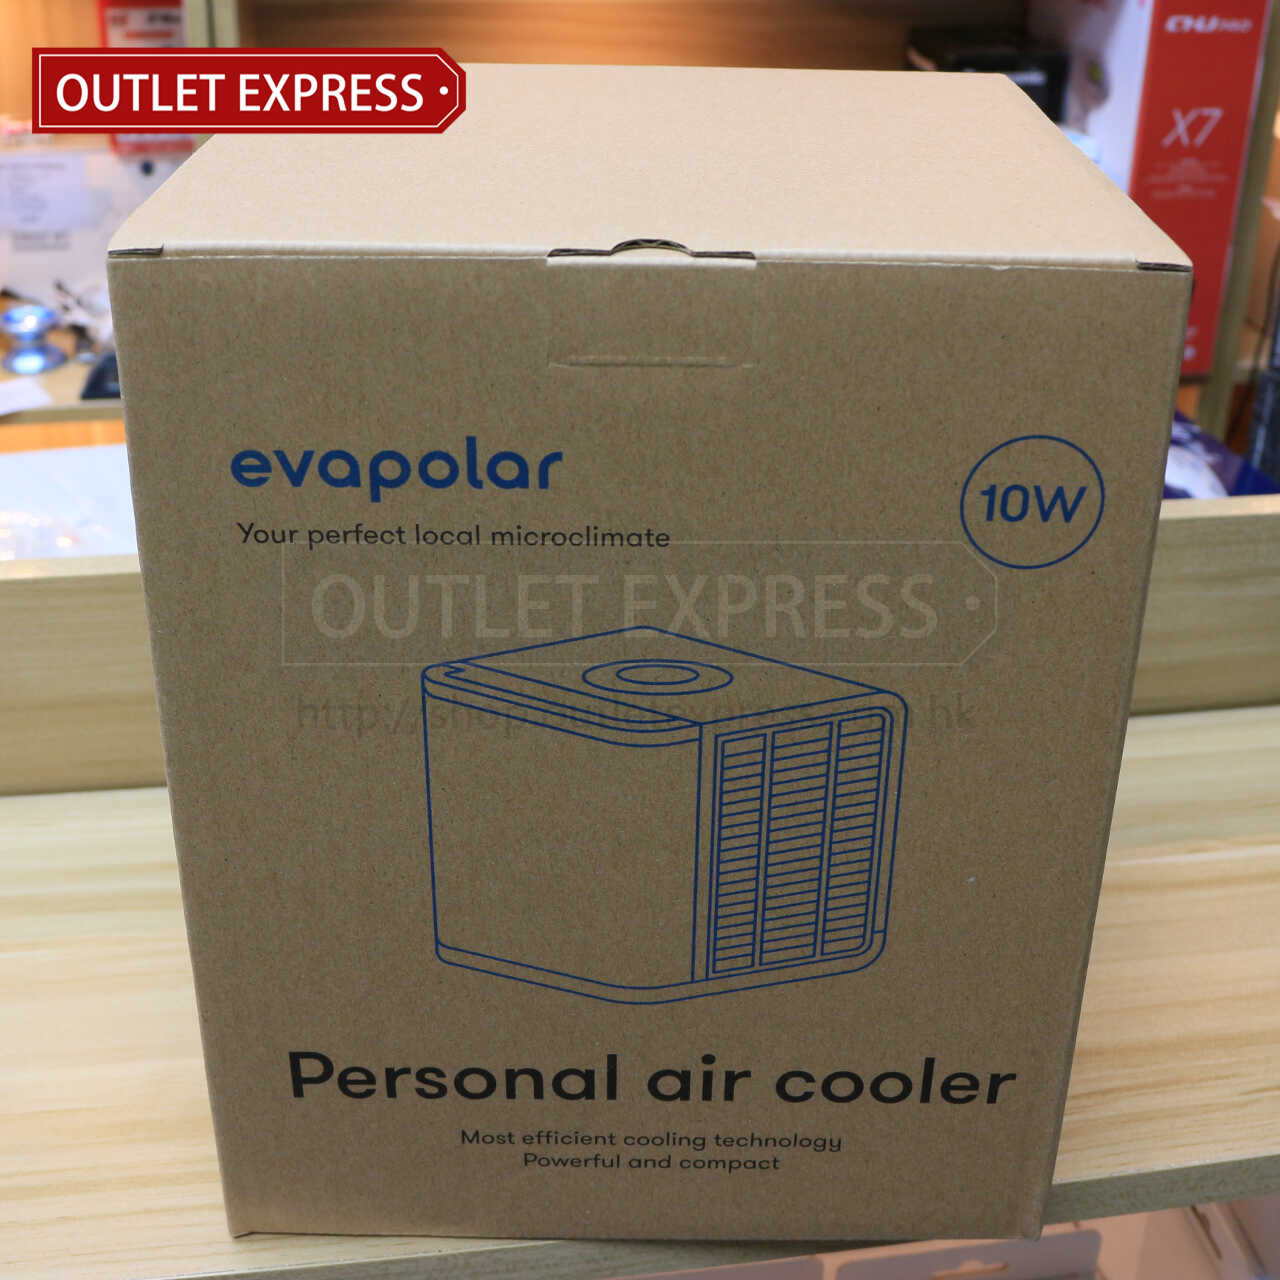 Evapolar 小型流動冷氣機 包裝盒- Outlet Express HK生活百貨城實拍相片